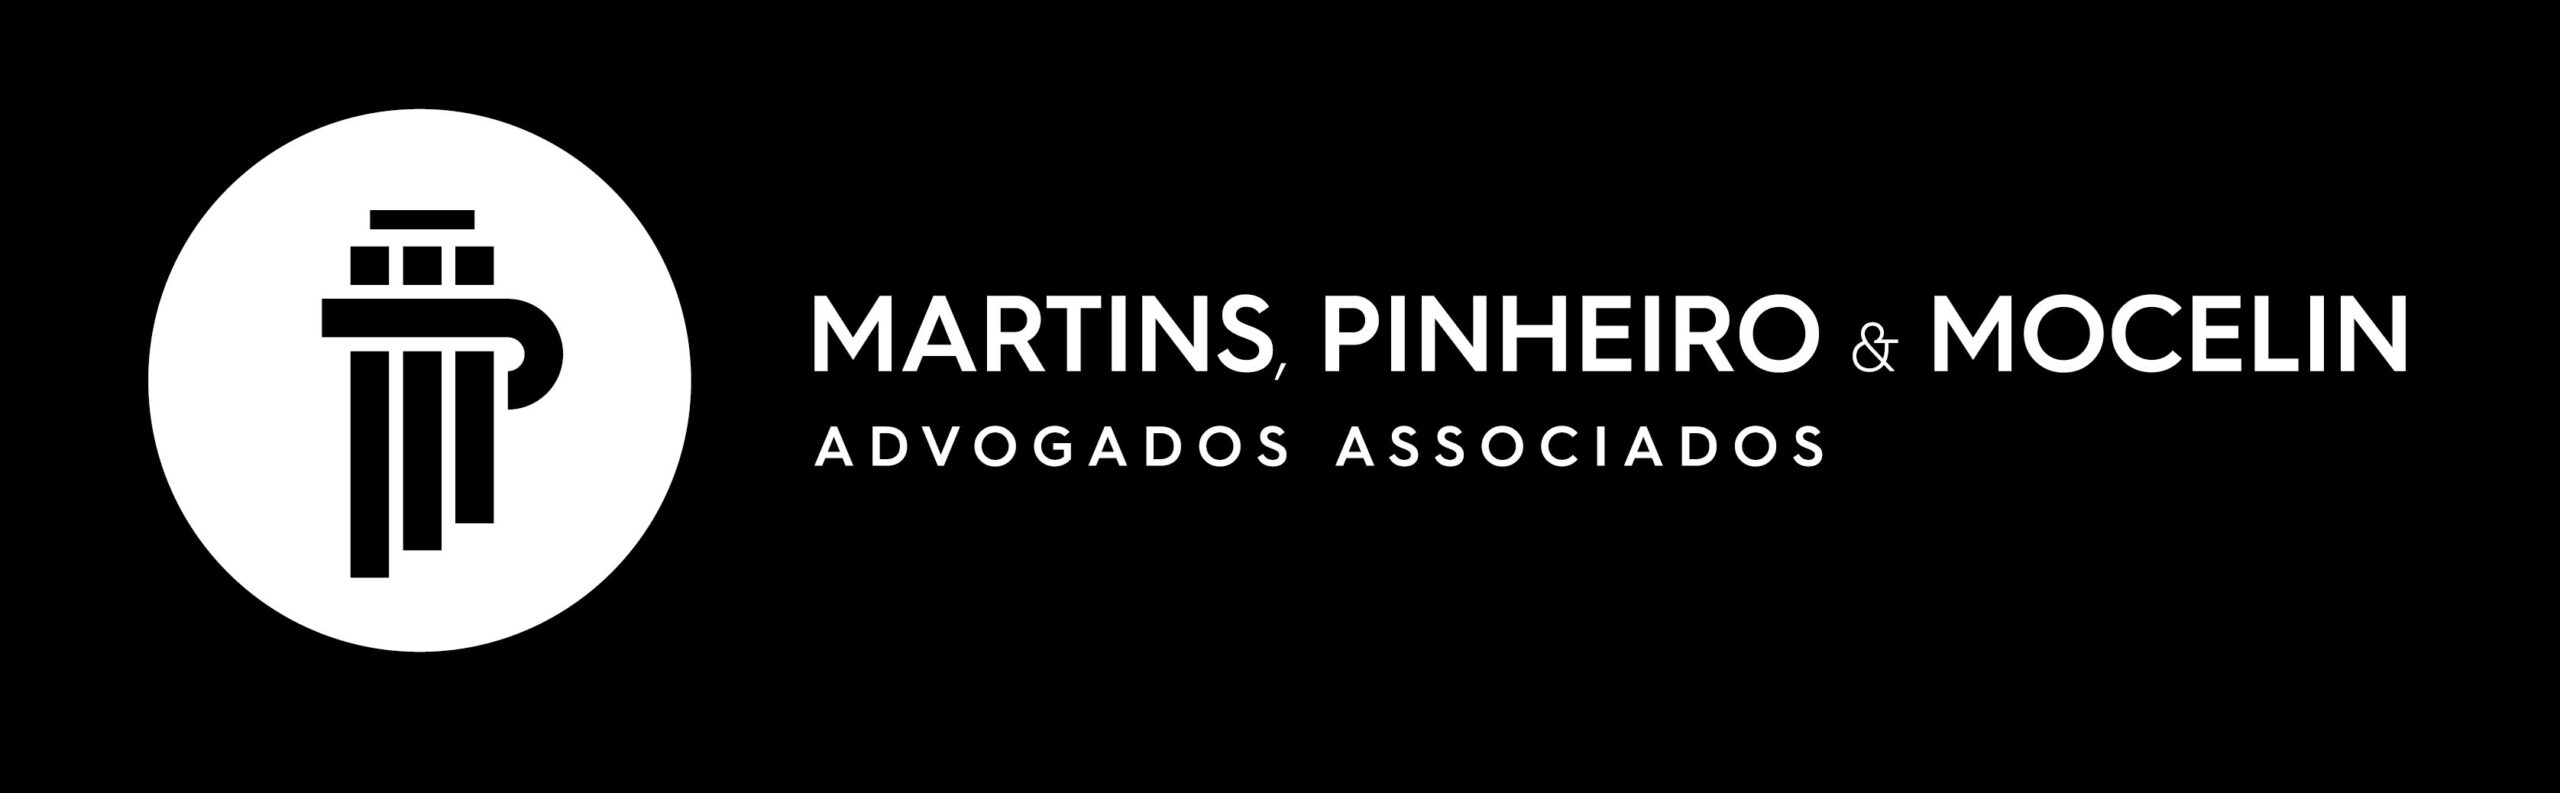 Martins, Pinheiro e Mocelin Advogados